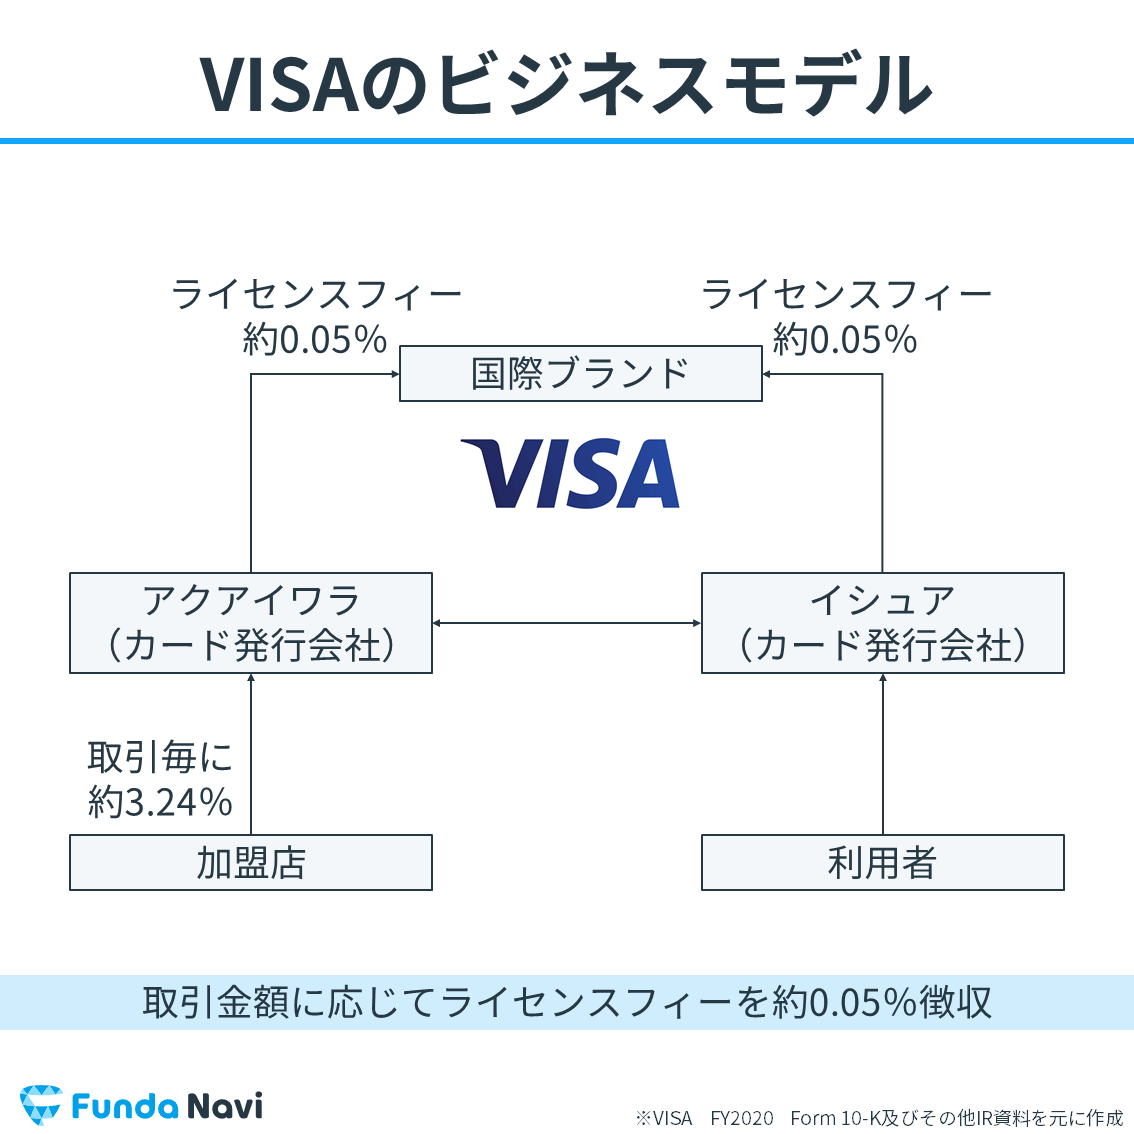 VISAのビジネスモデル